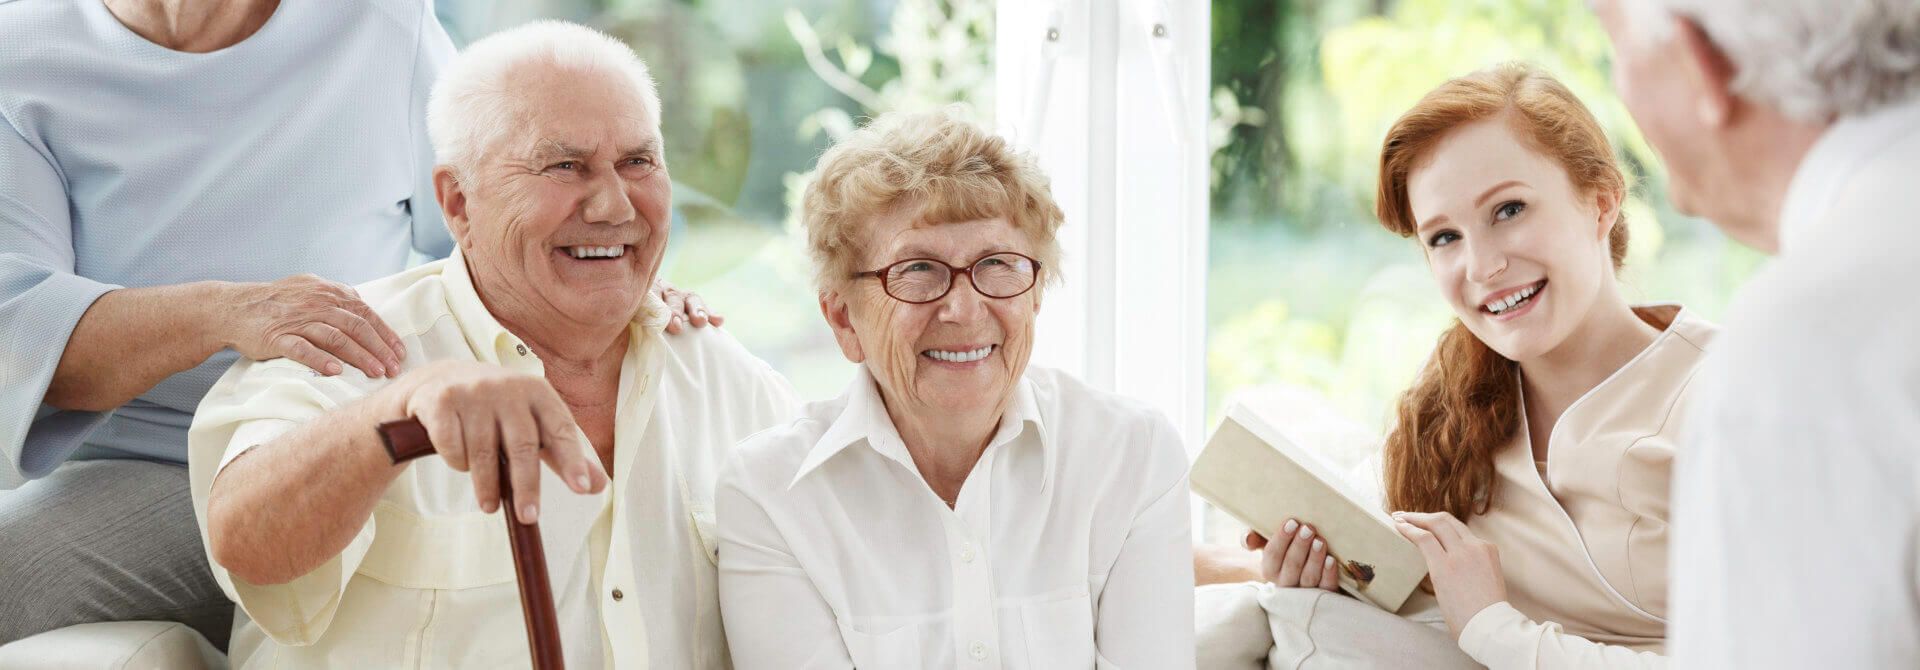 Jak pogodzić opiekę nad seniorem i własne obowiązki?